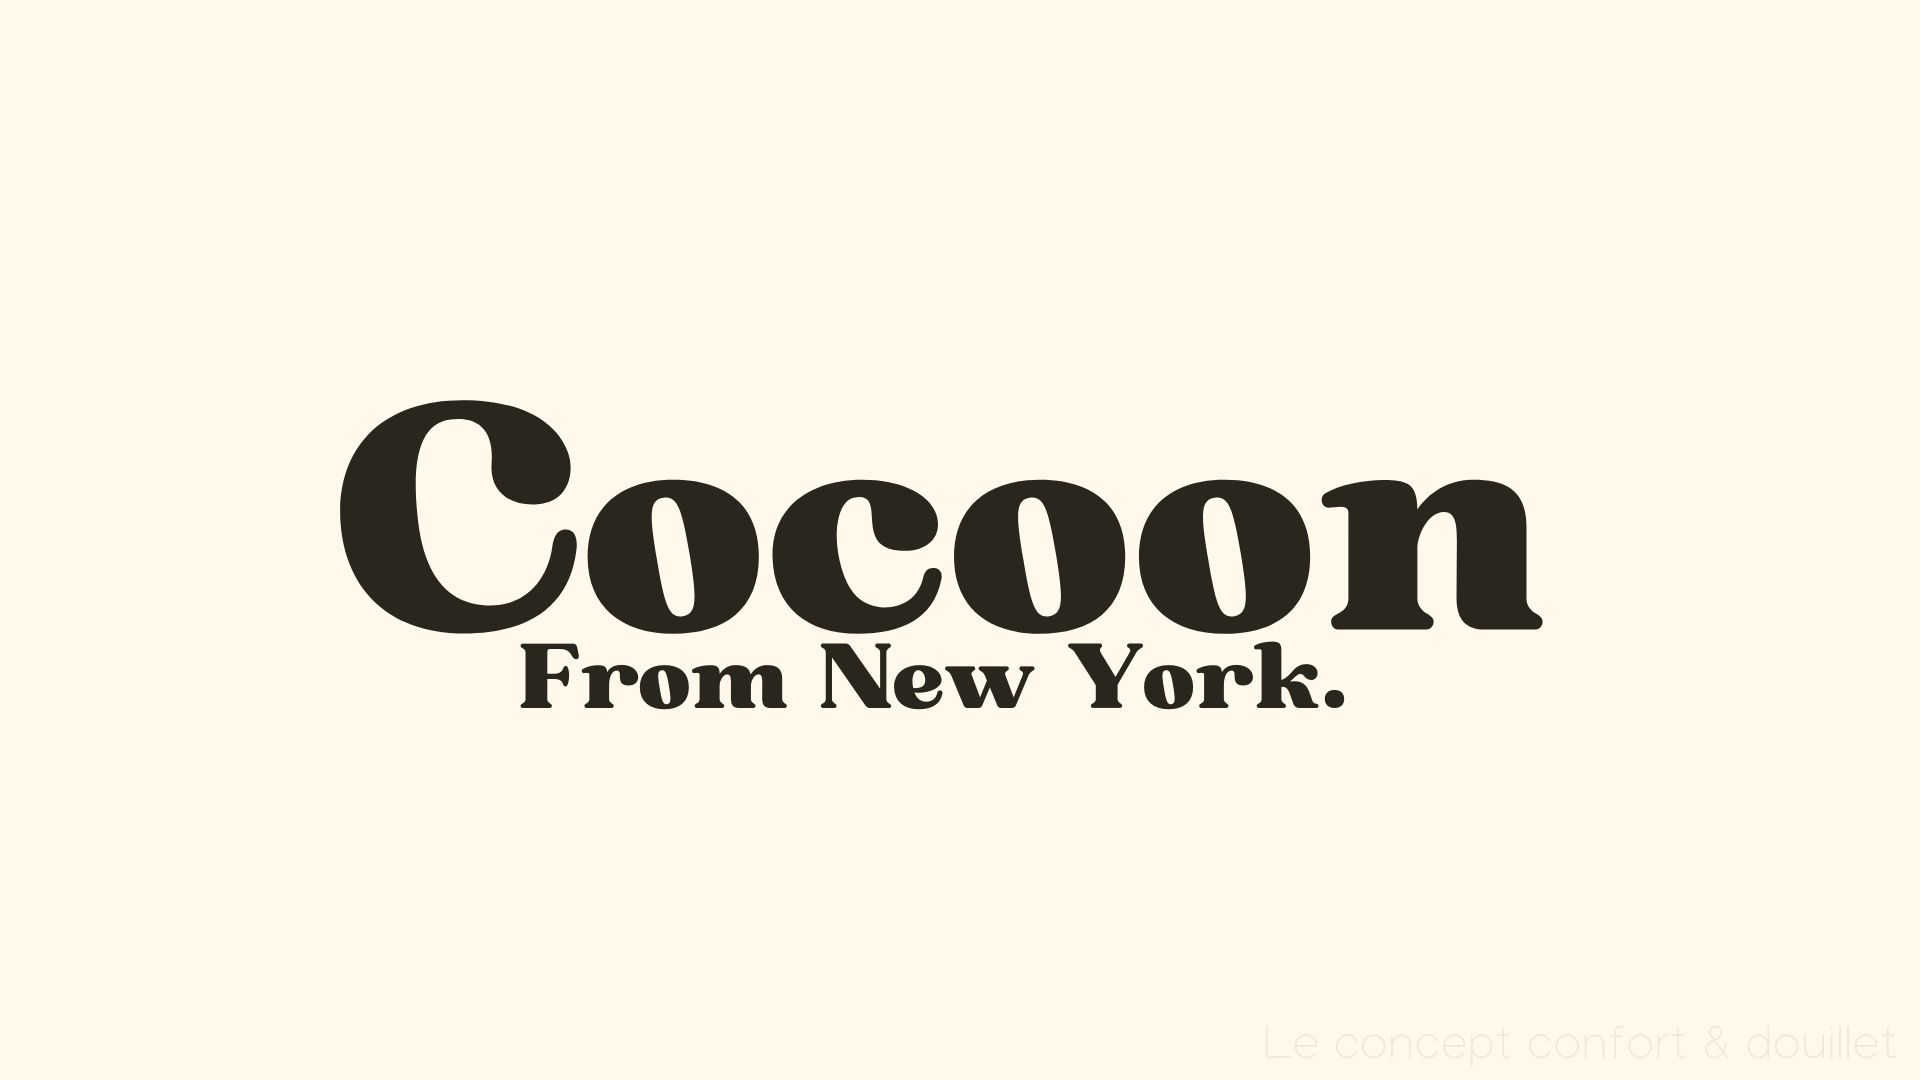 Cocoon from NY